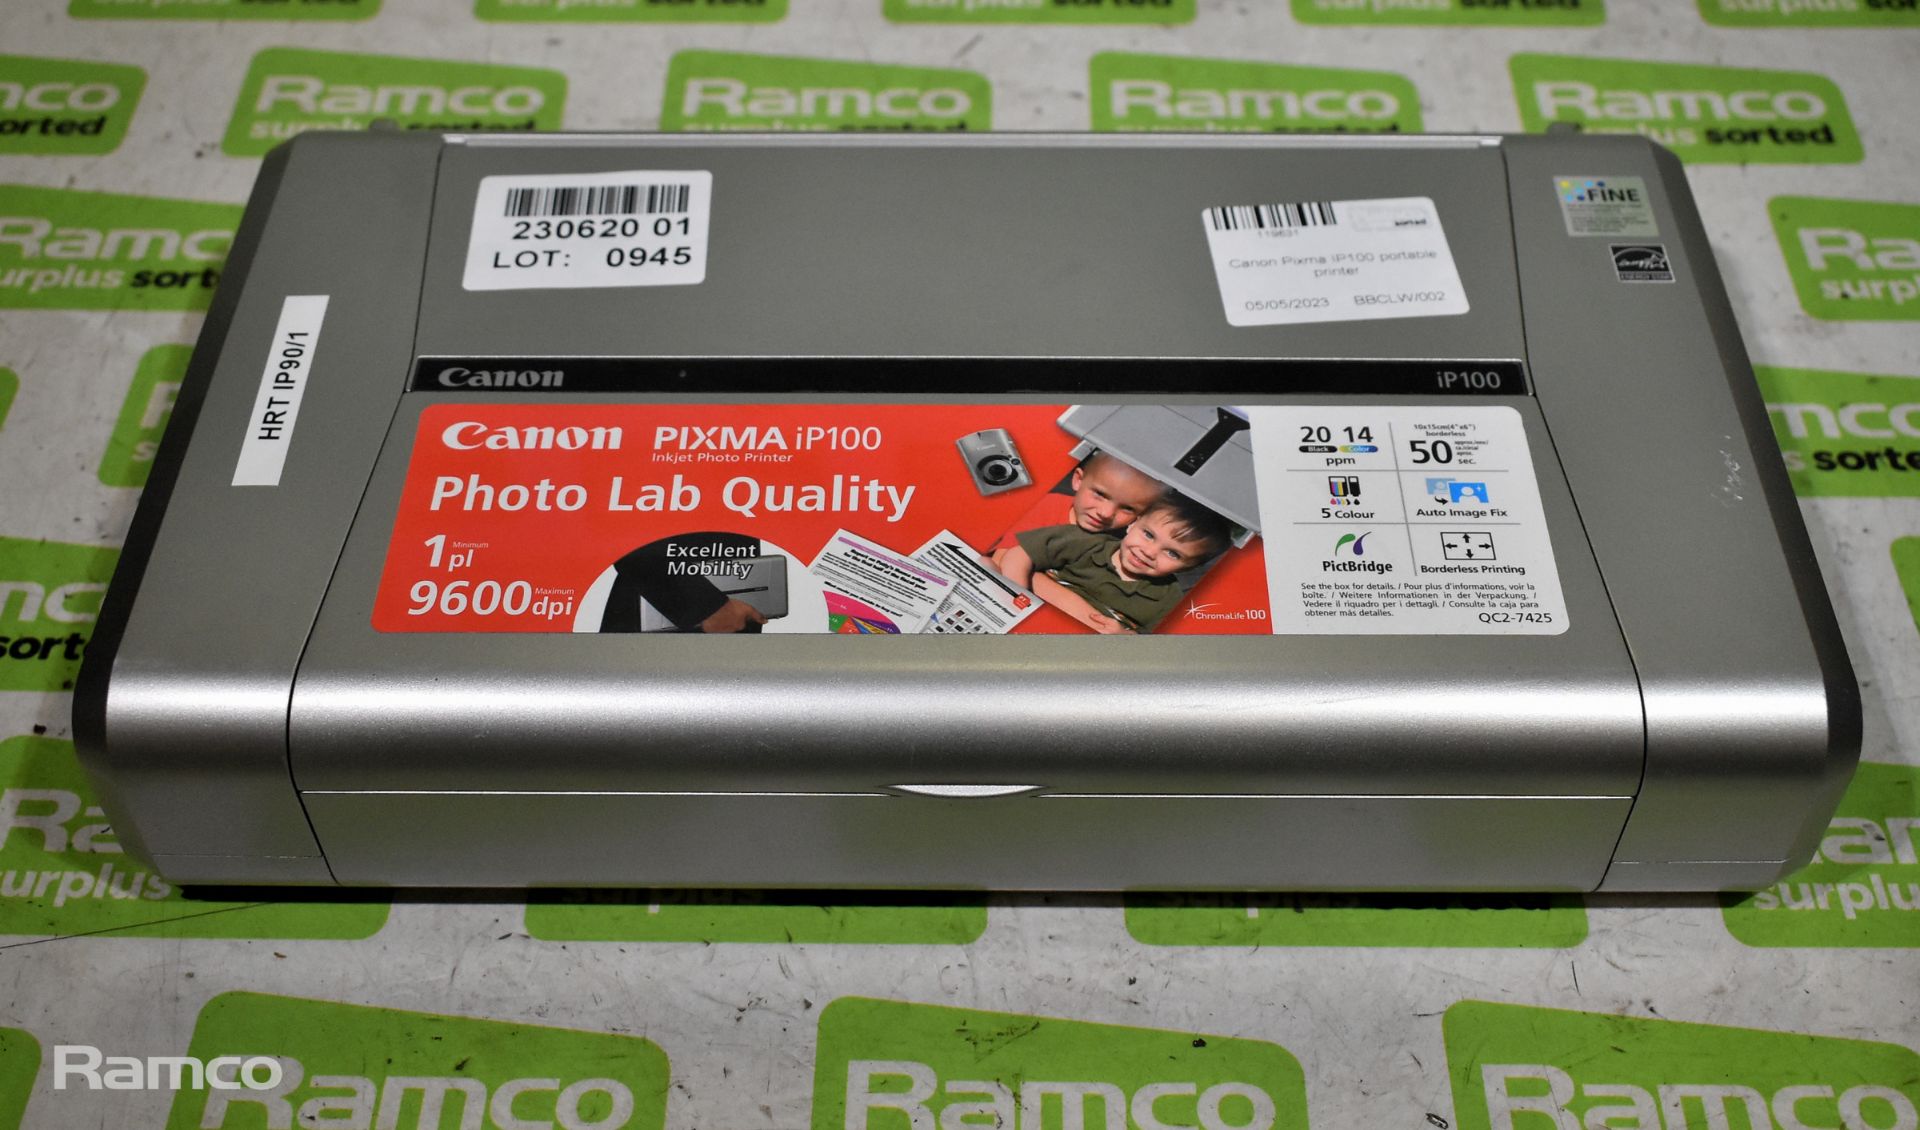 Canon Pixma IP100 portable printer